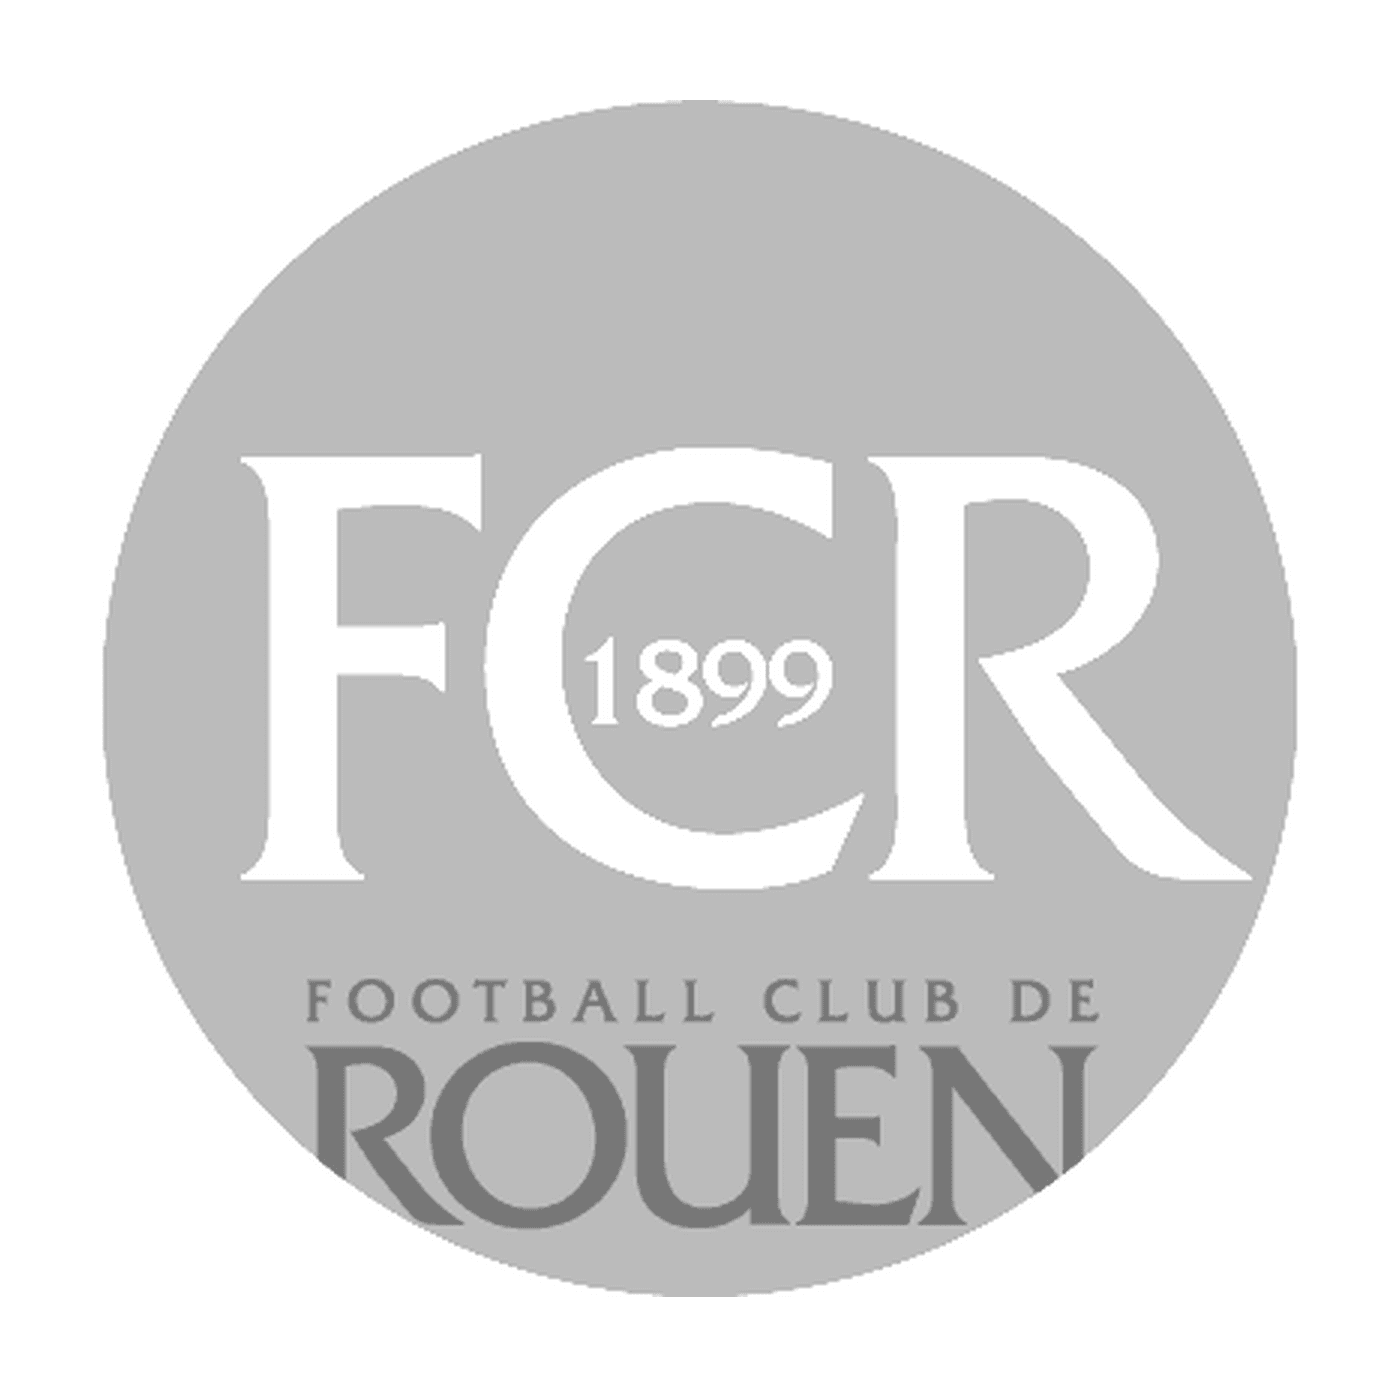  Logotipo del Fútbol Club de Rouen 